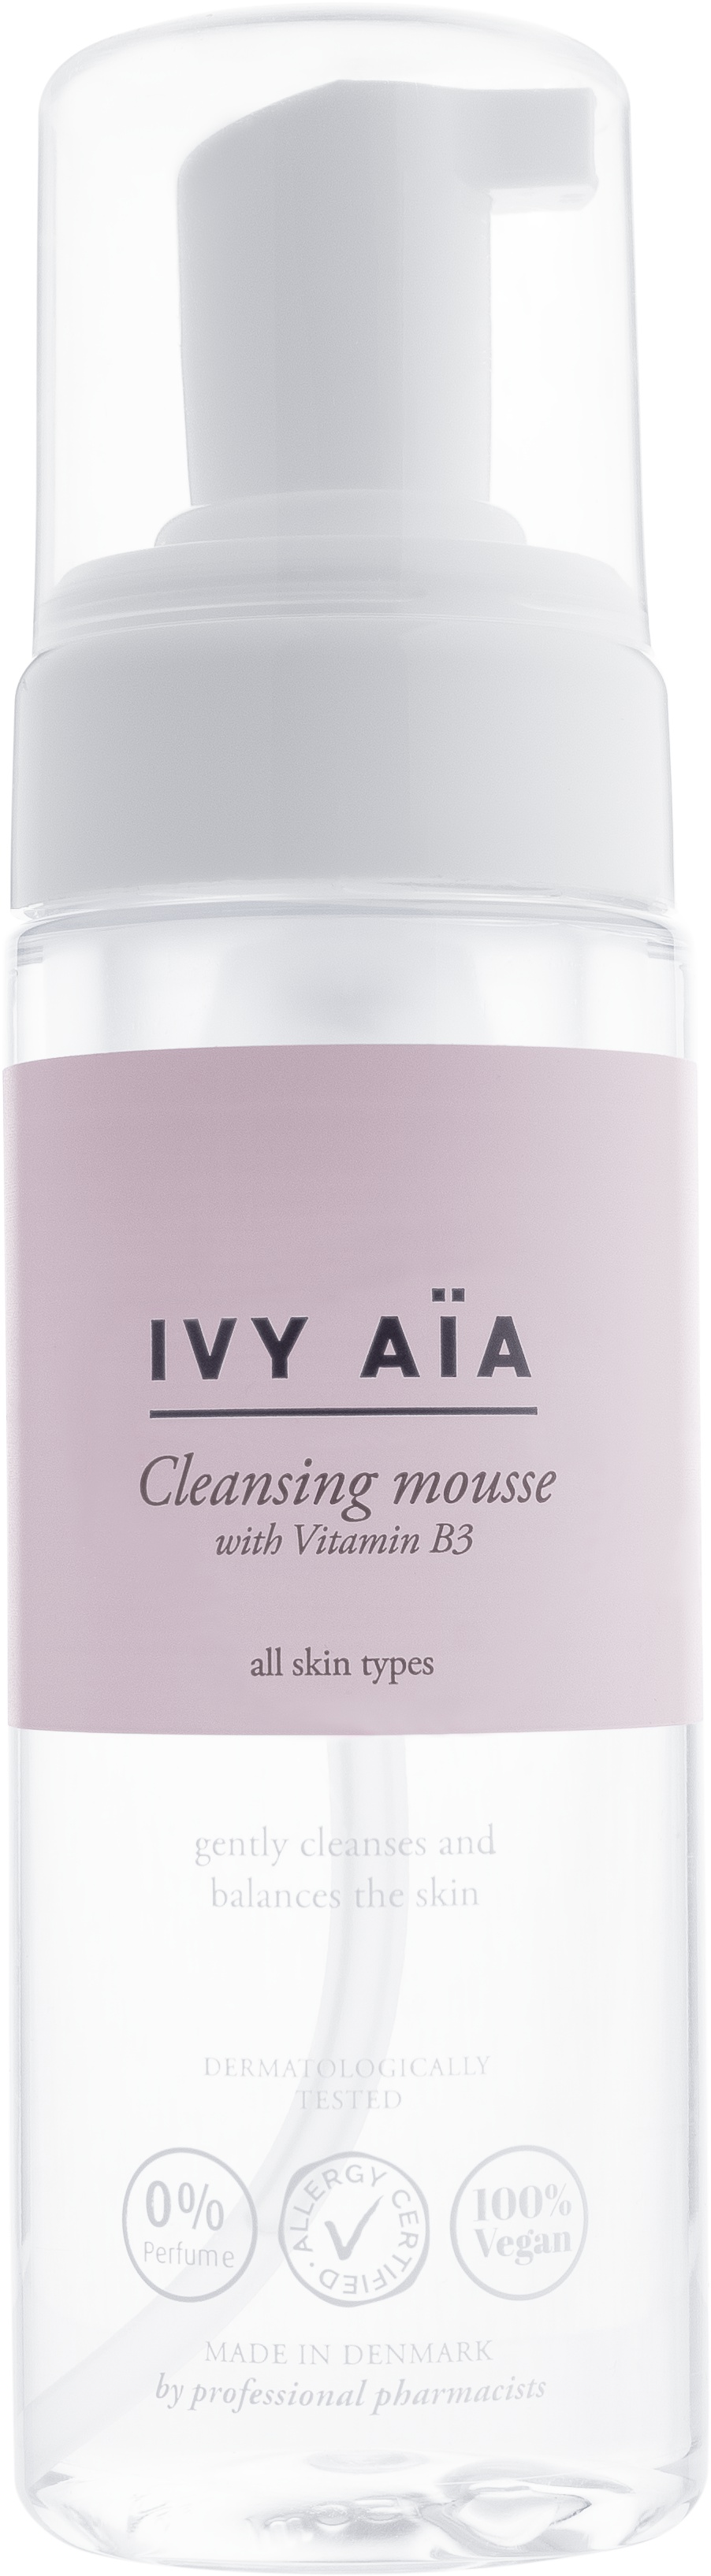 Ivy Aïa Cleansing Mousse